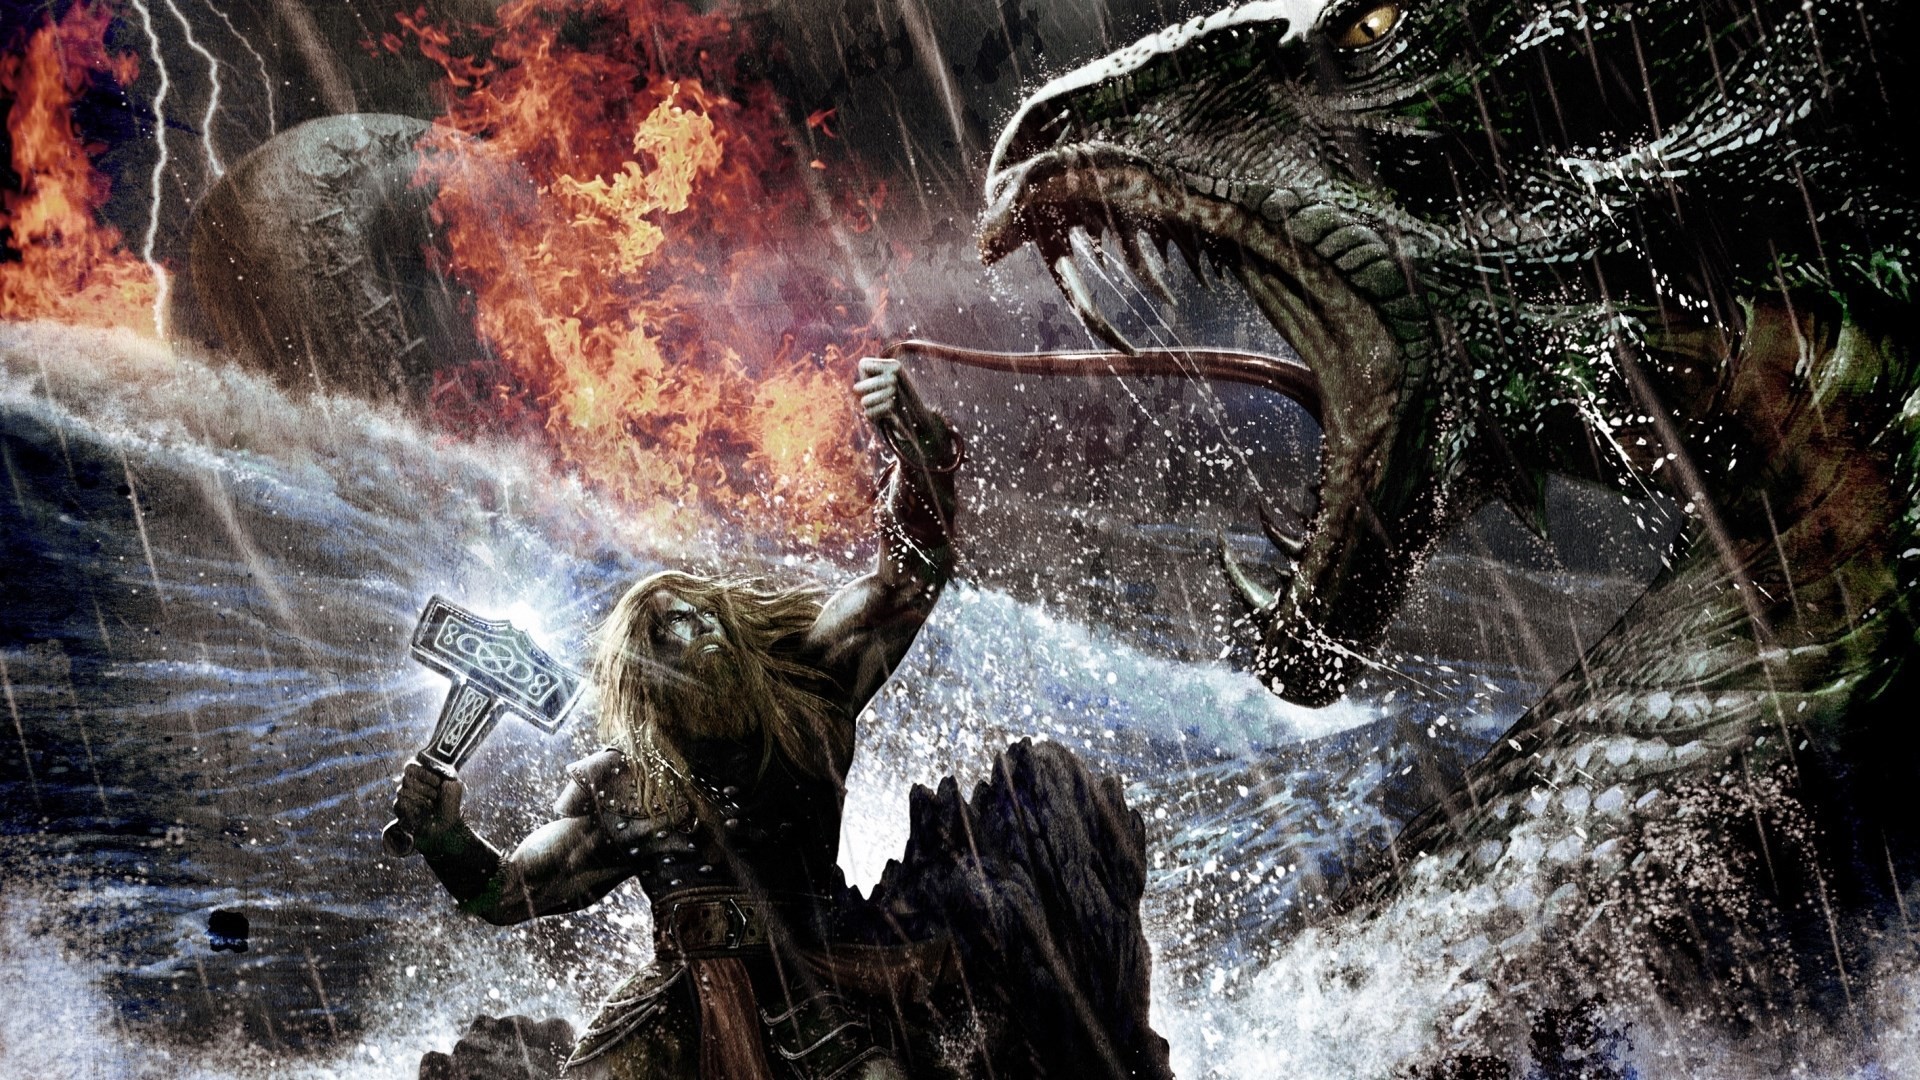 Viking Kills The Dragon Wallpaper And Image